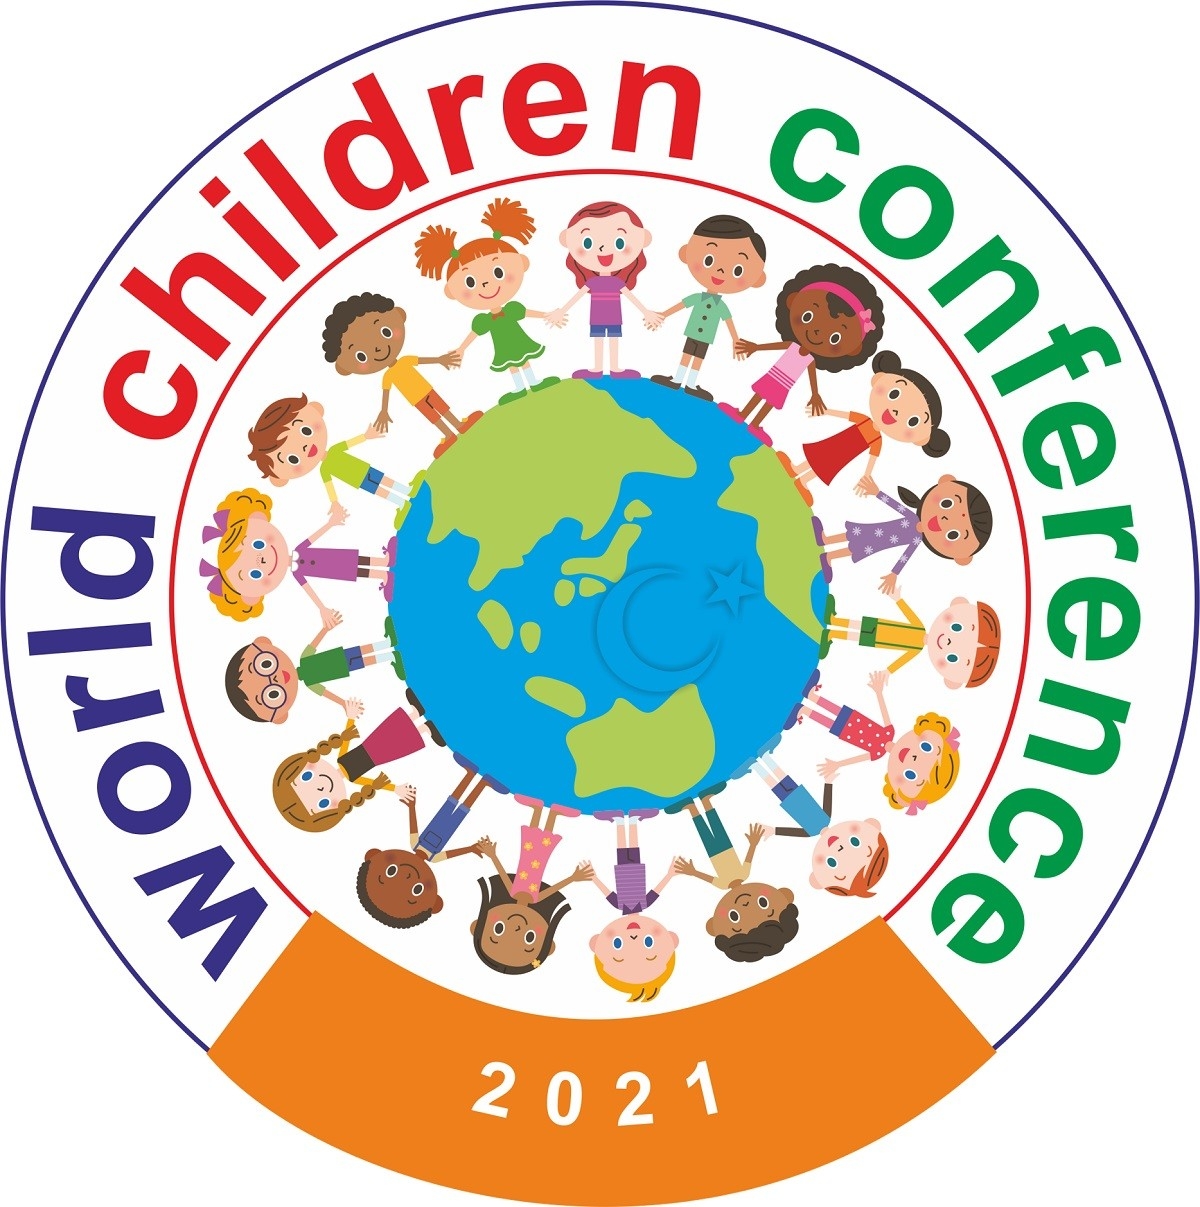 Dünya Çocuk Konferansı 21-23 Mayıs’ta KKTC’de yapılacak